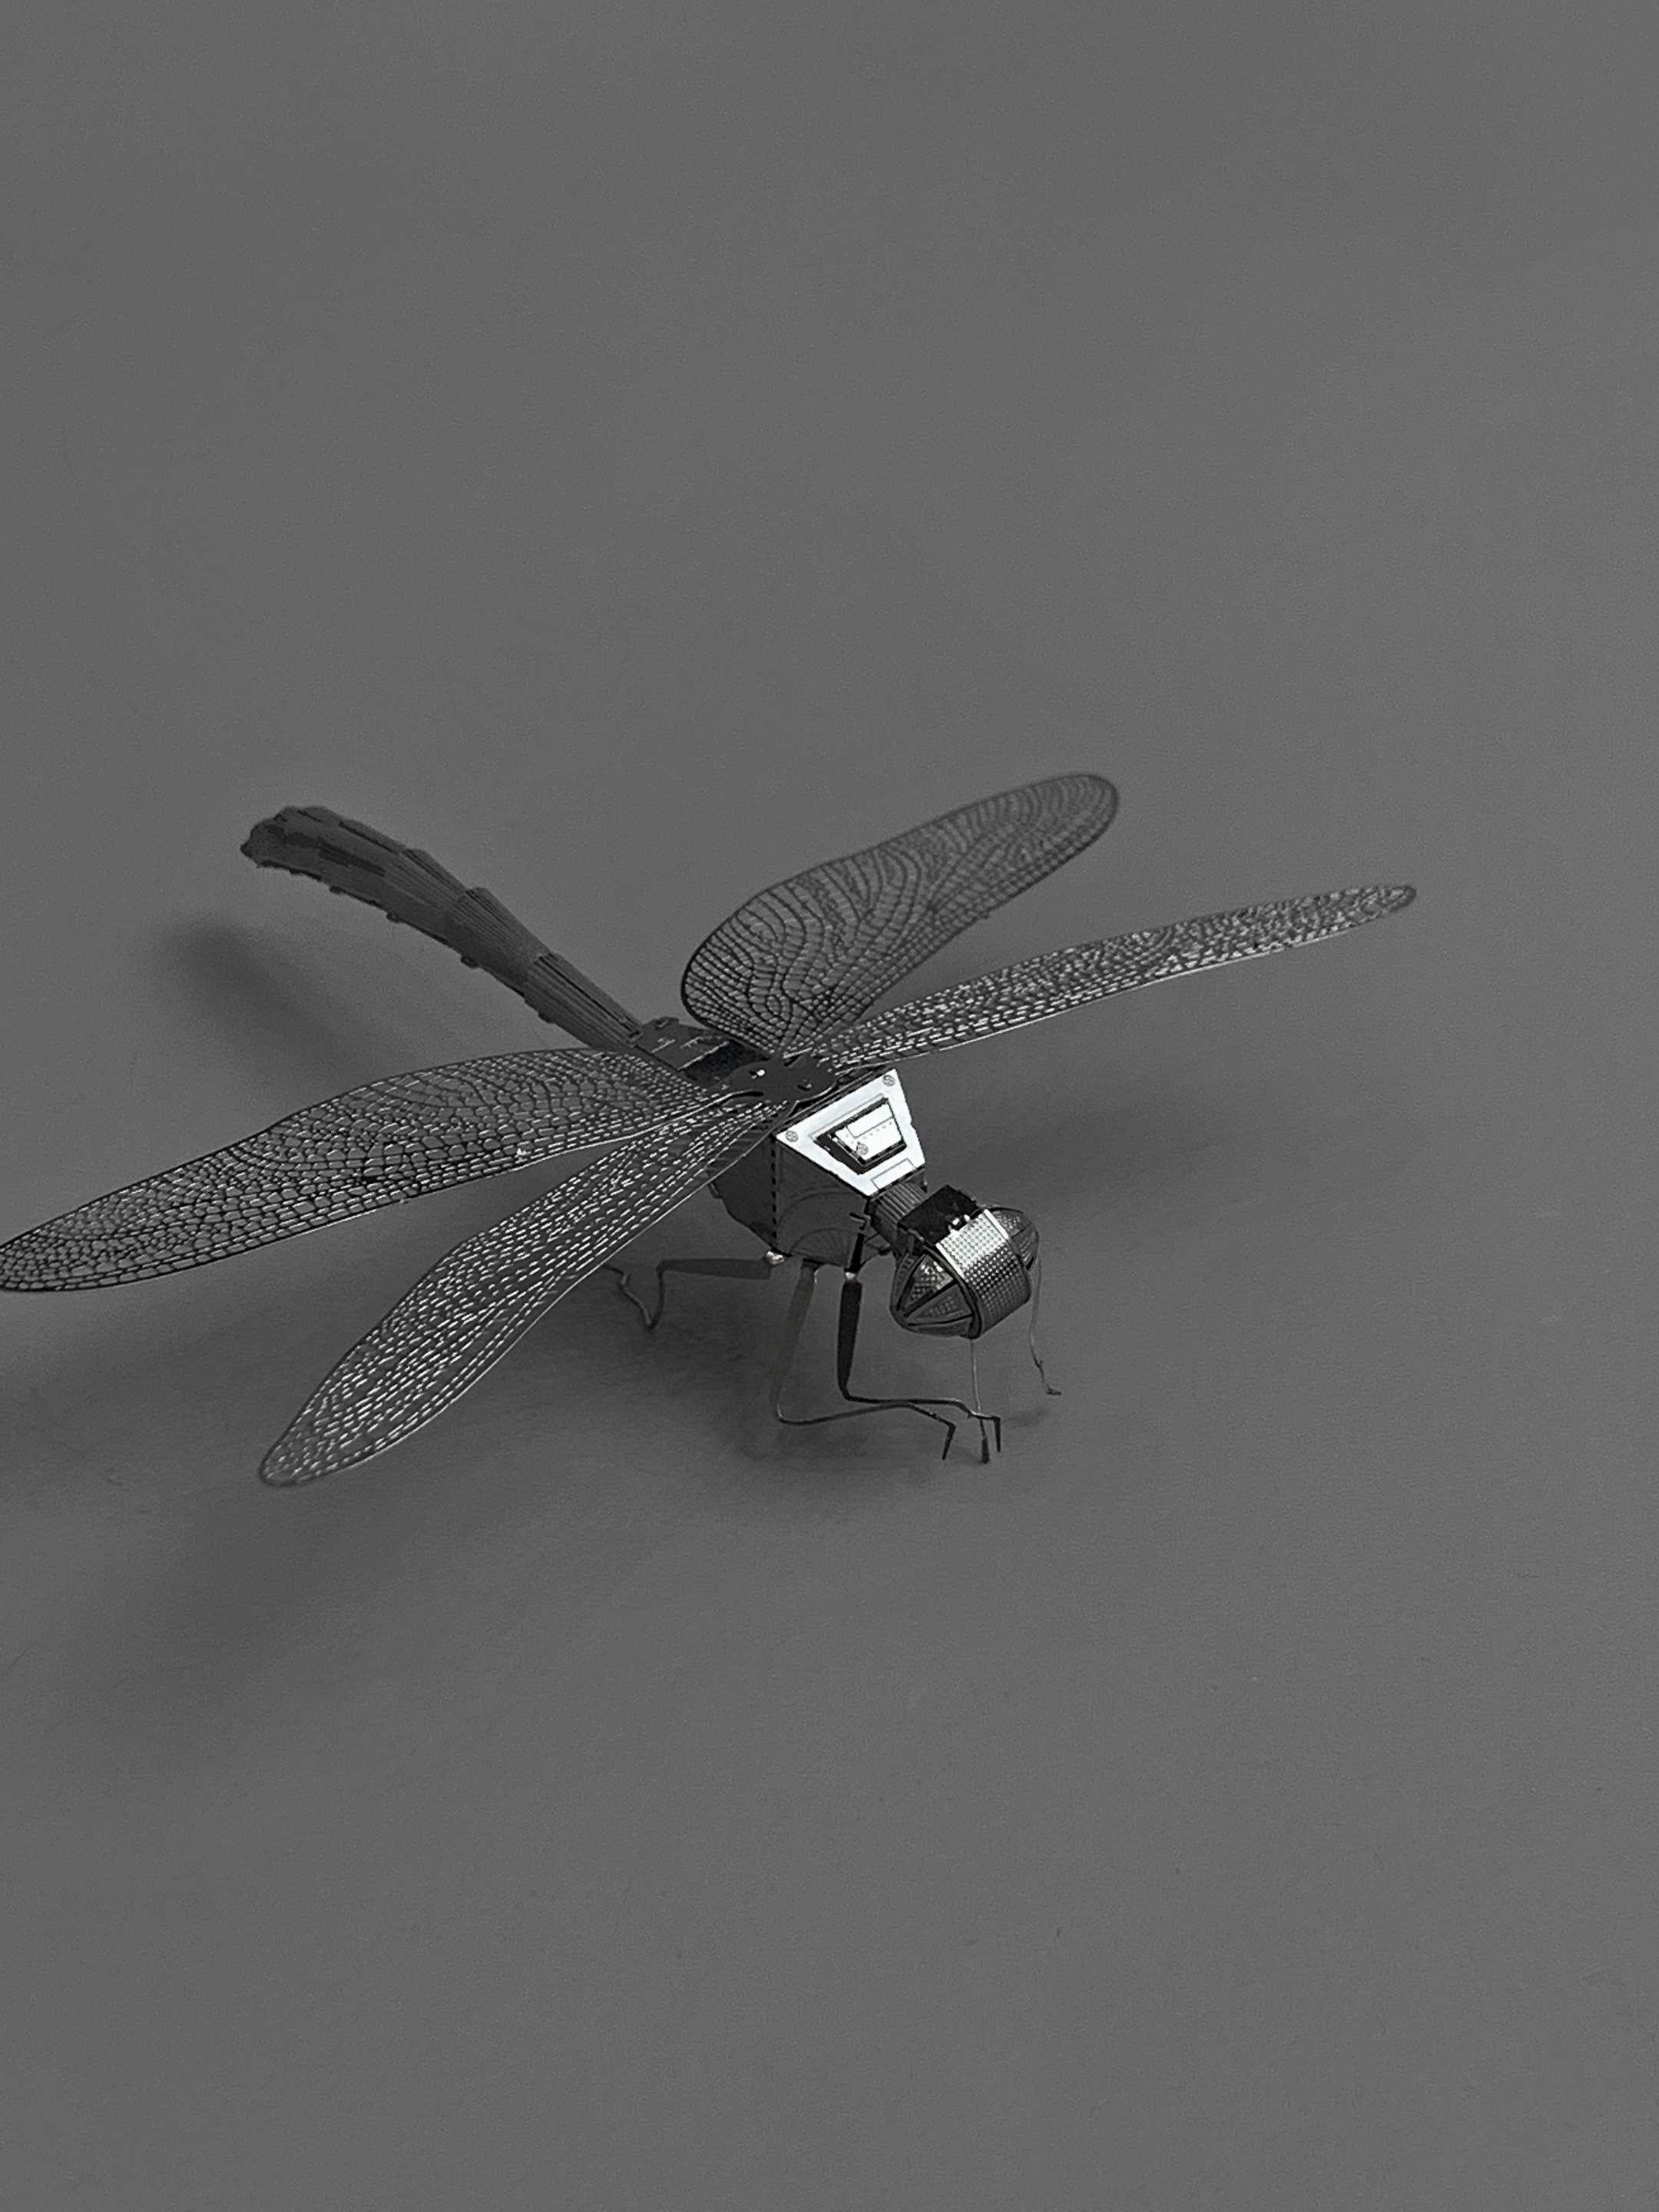 无聊的时候组装个模型玩 金属拼装玩具 摆件 蜻蜓 幽灵车 城堡